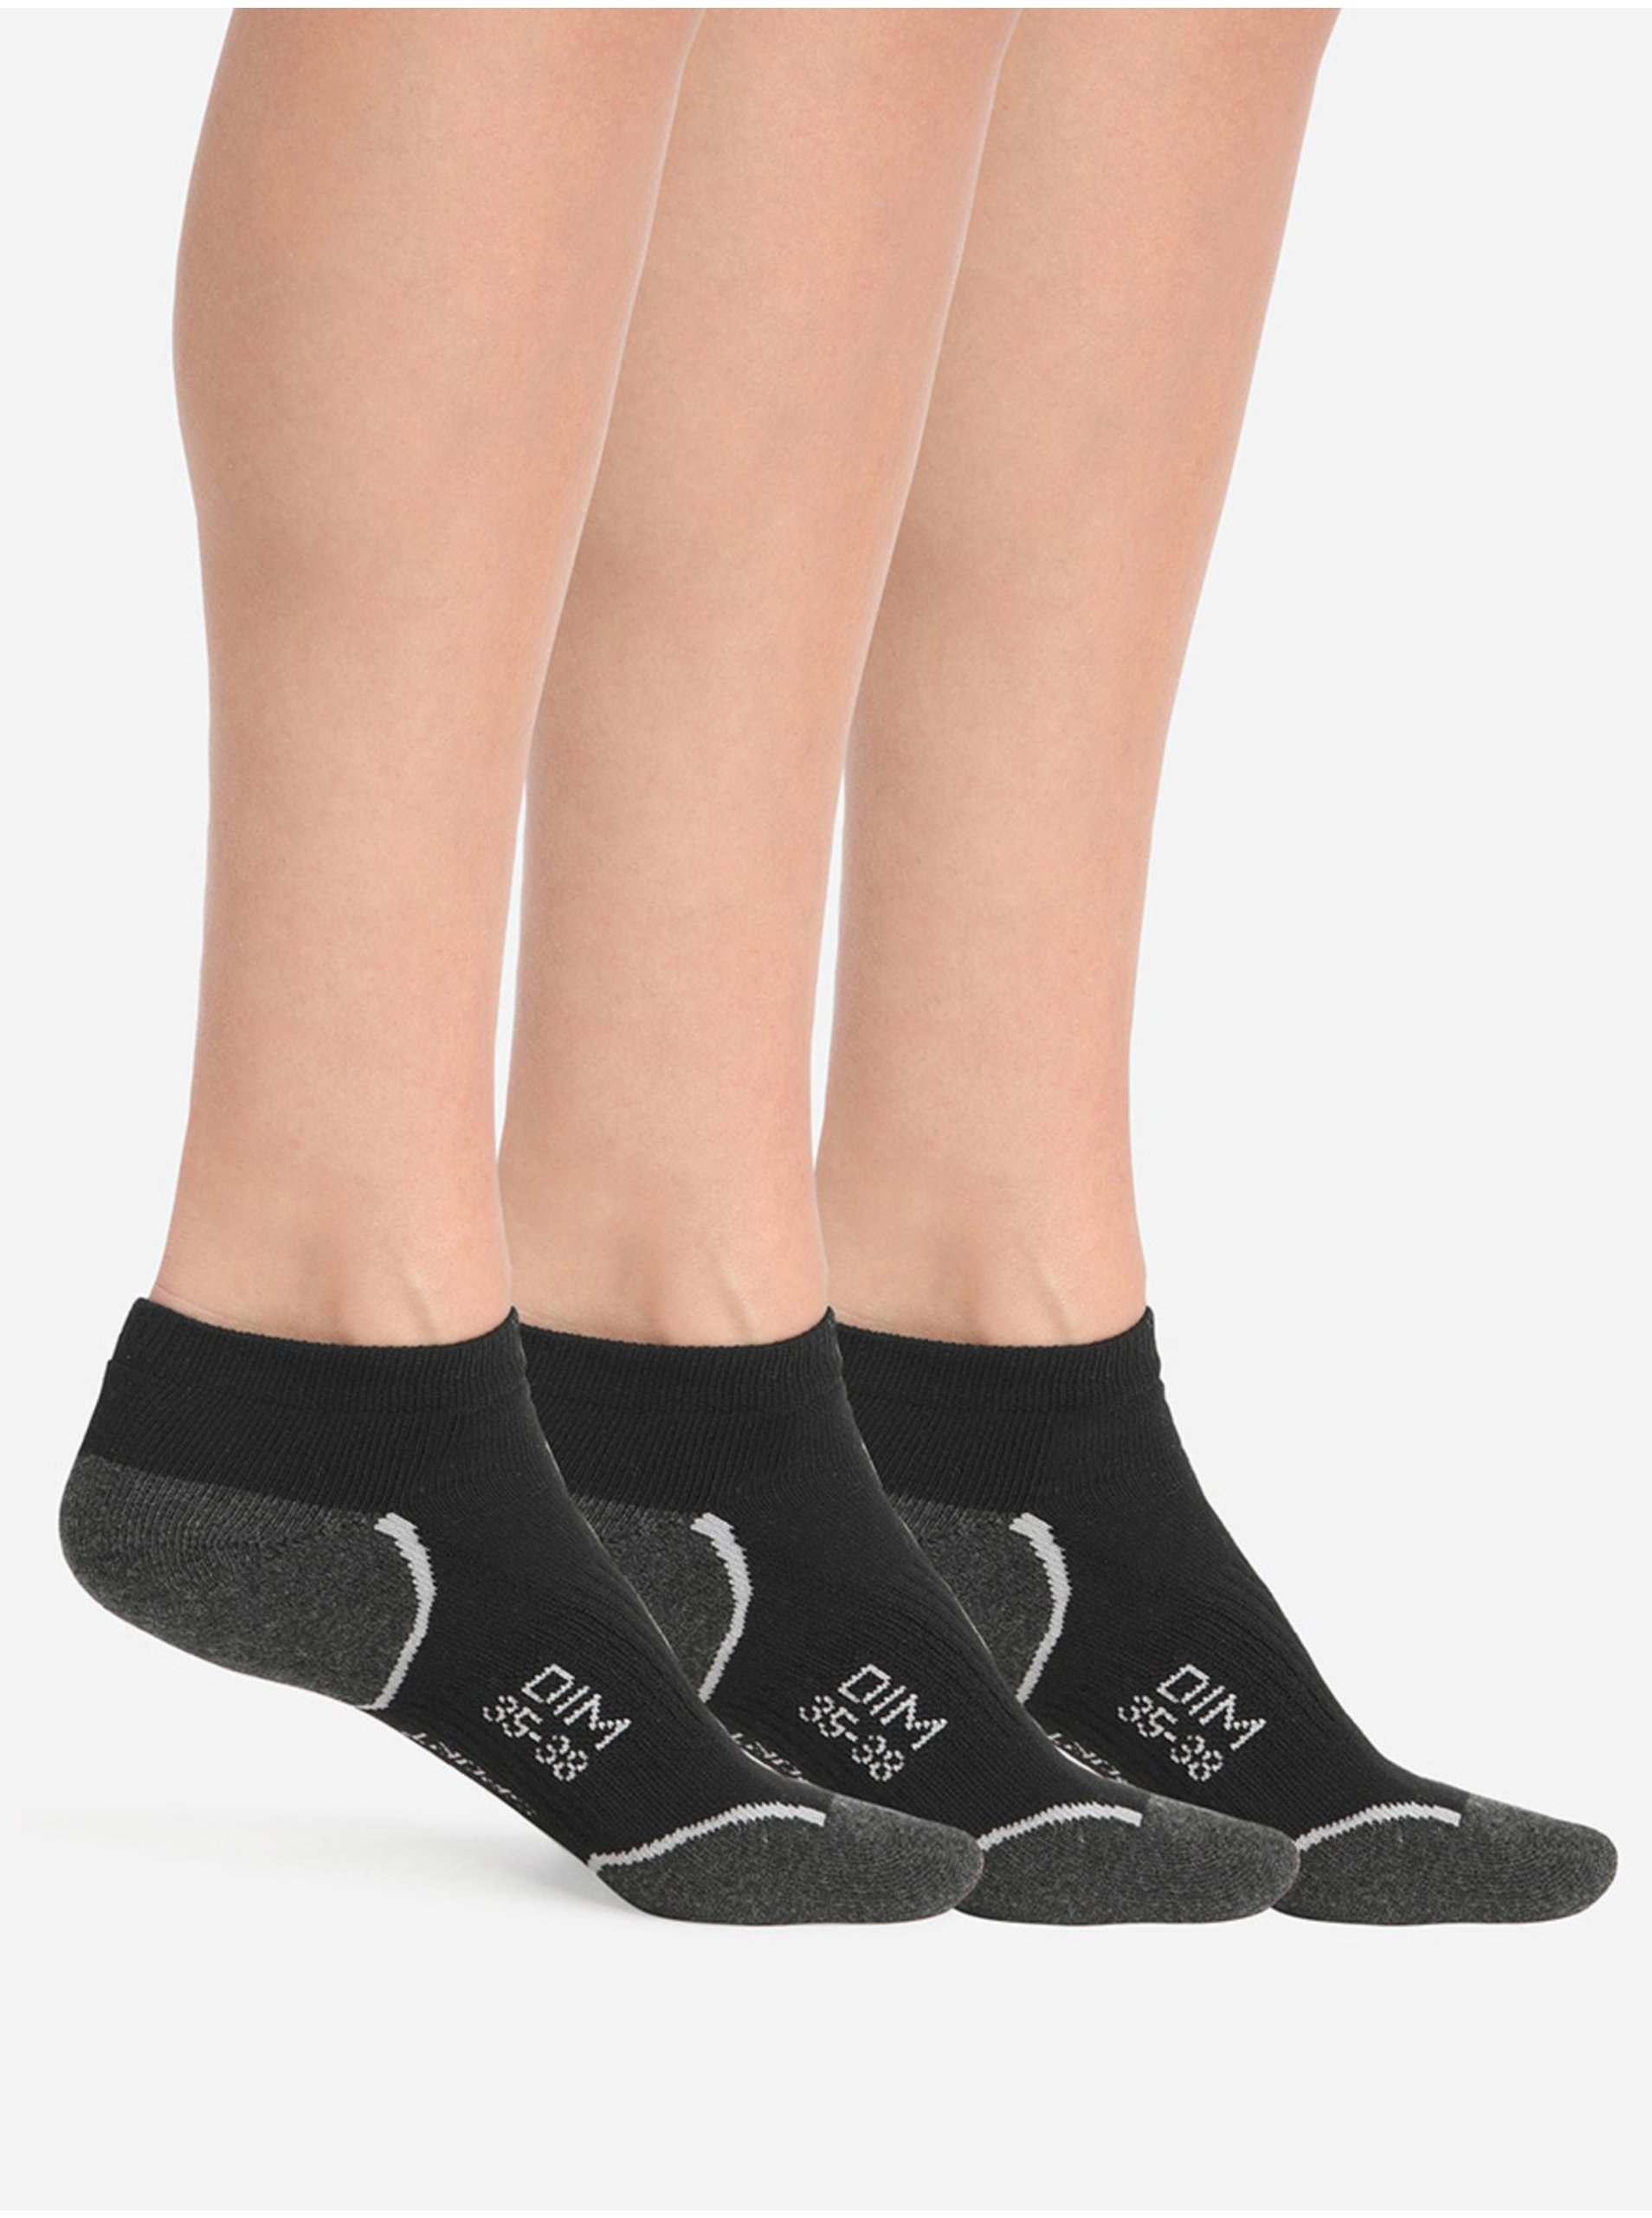 E-shop Sada tří dámských sportovních ponožek v černé barvě Dim SPORT IN-SHOE 3x